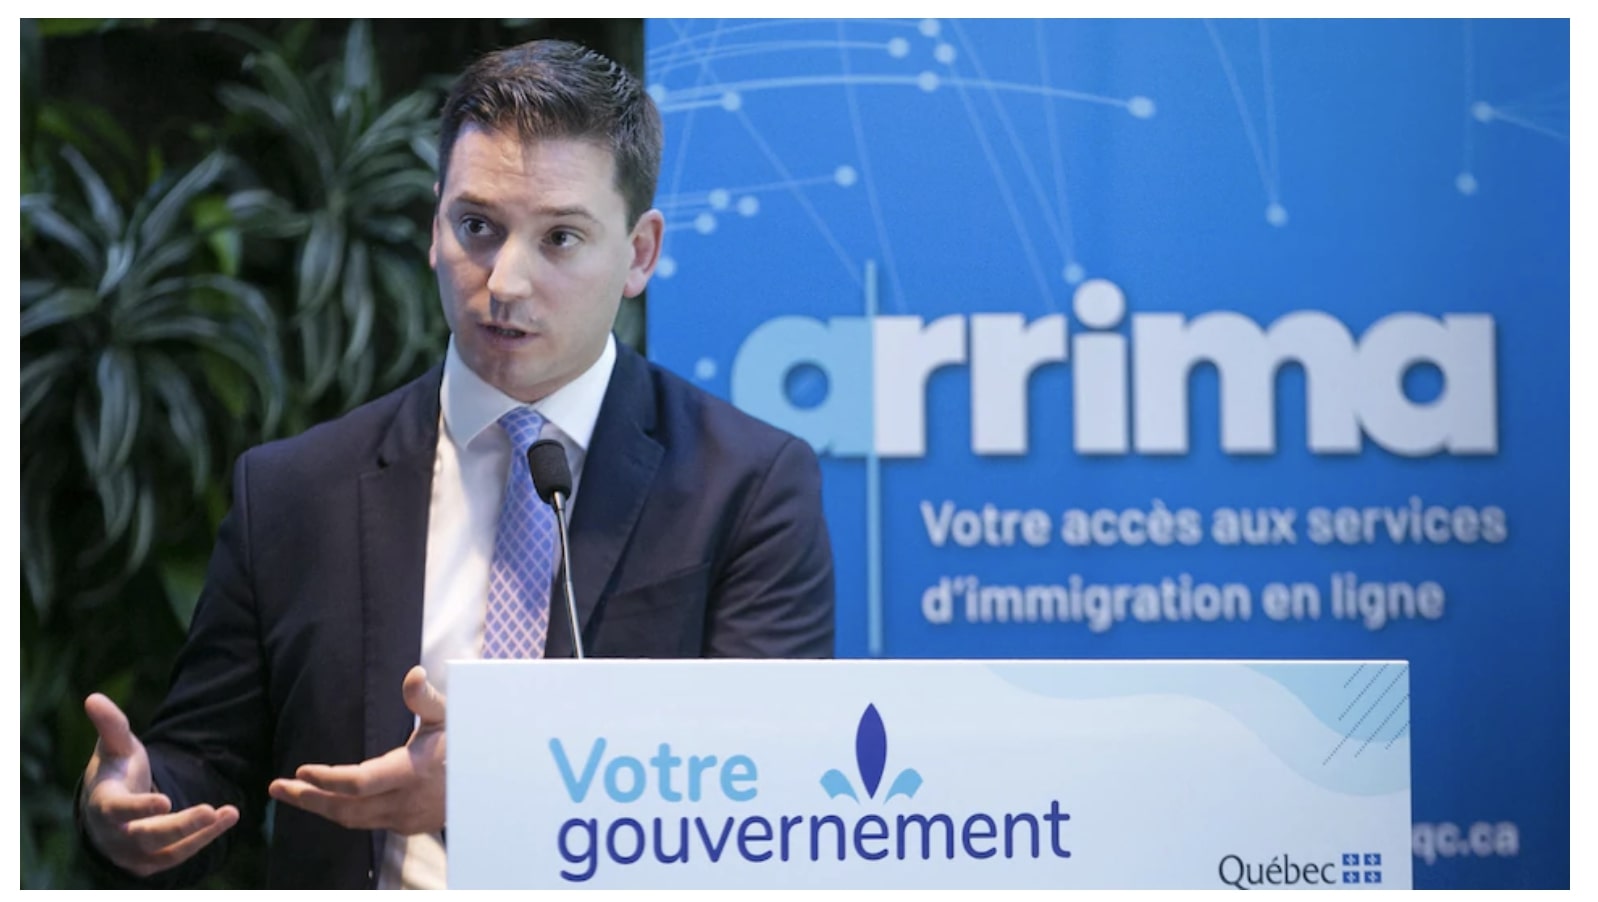 Le ministre de l'immigration devant une affiche d'Arrima